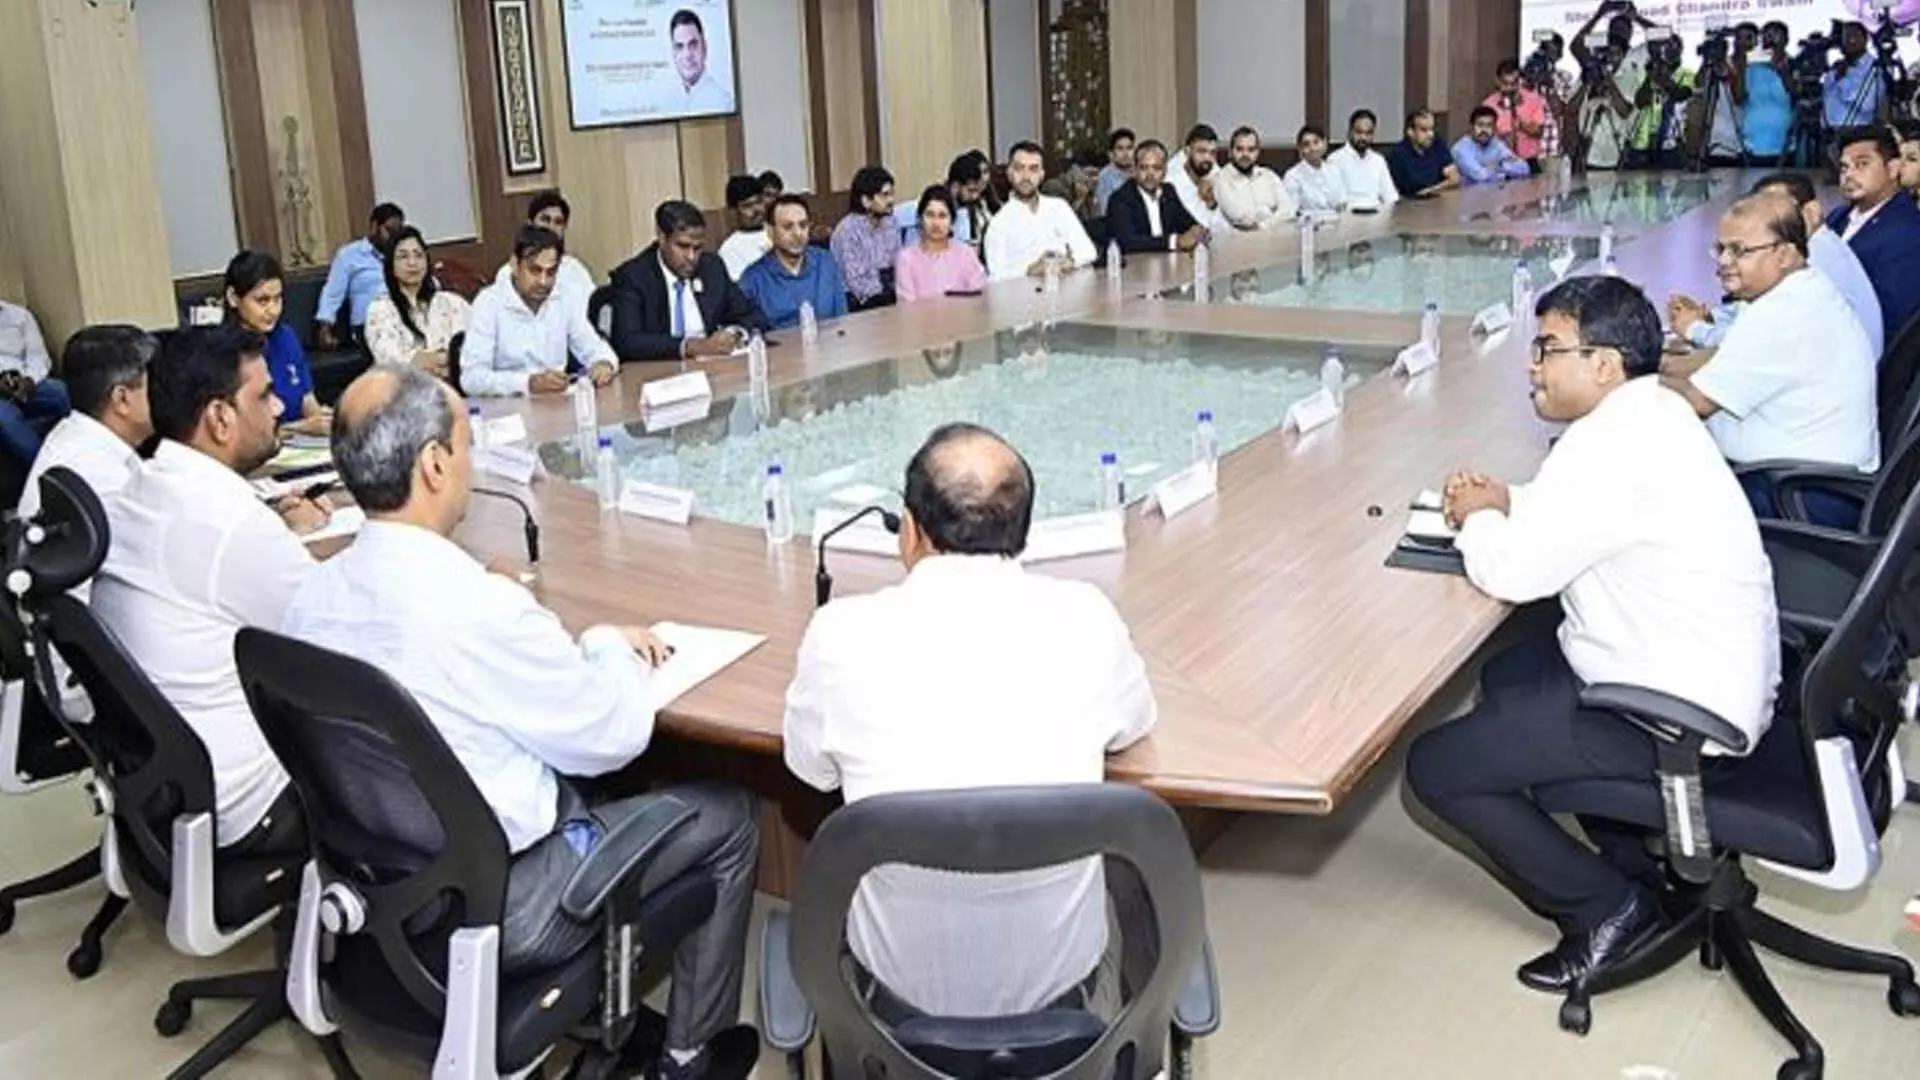 ODISHA: मंत्री ने उद्यमियों के साथ सत्र आयोजित किया